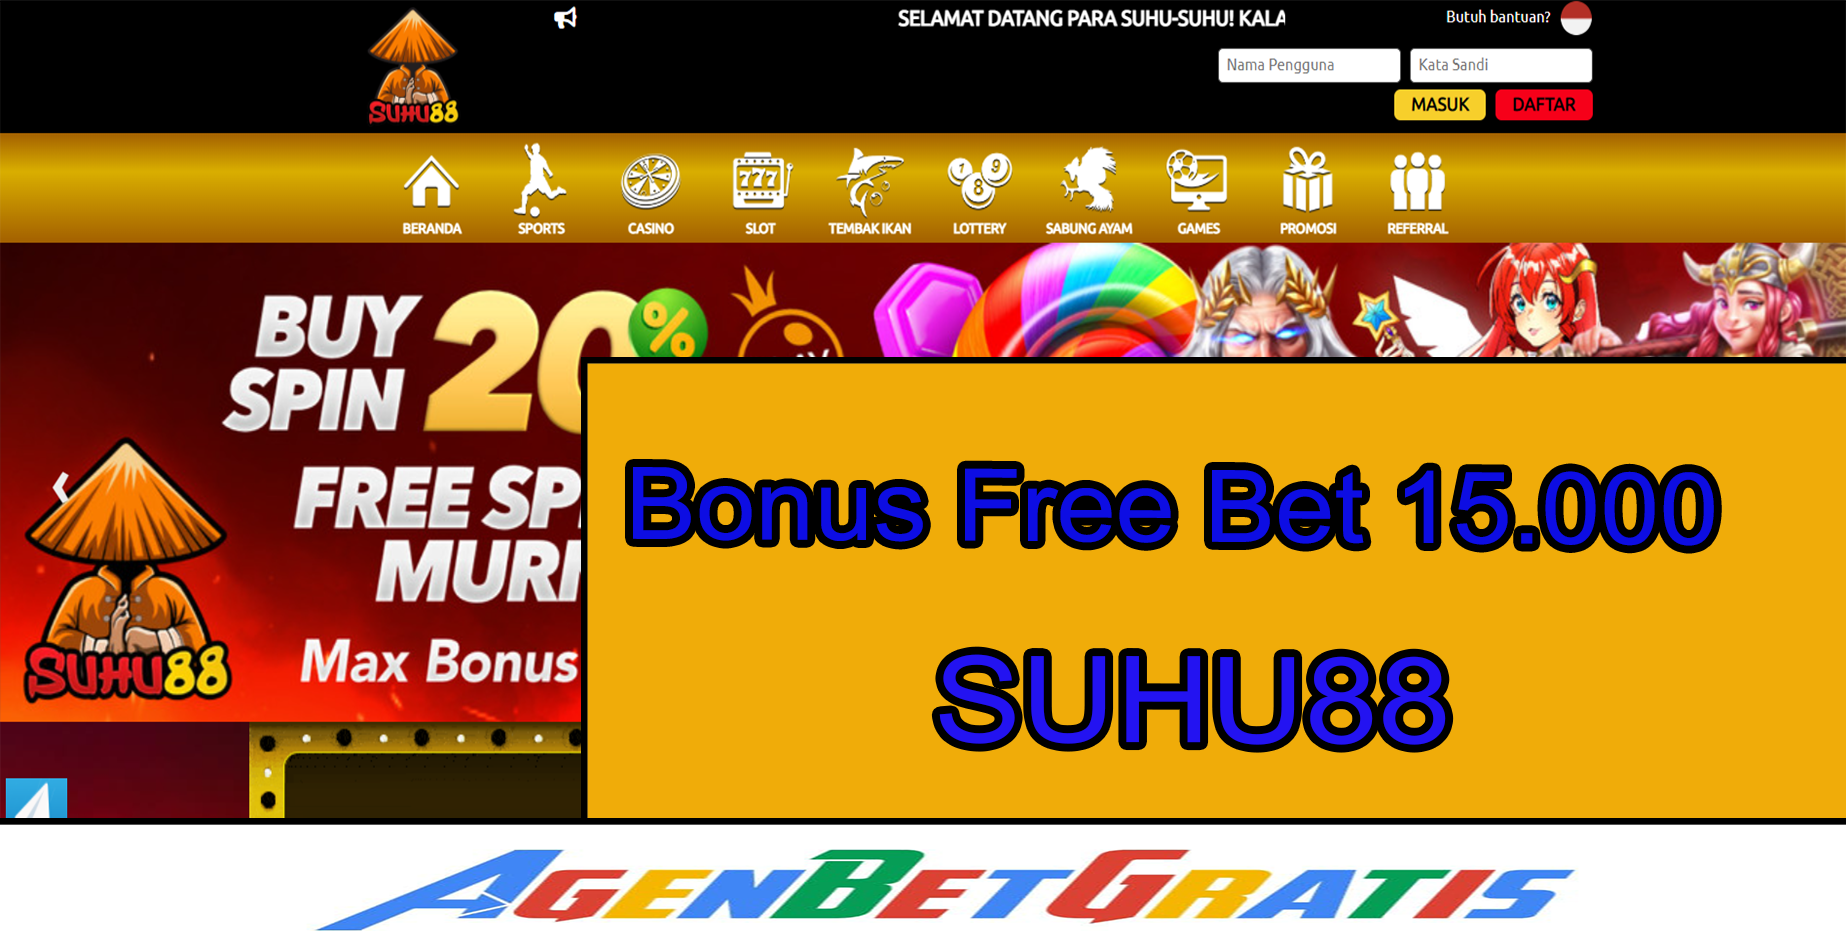 SUHU88 - Bonus FreeBet 15.000